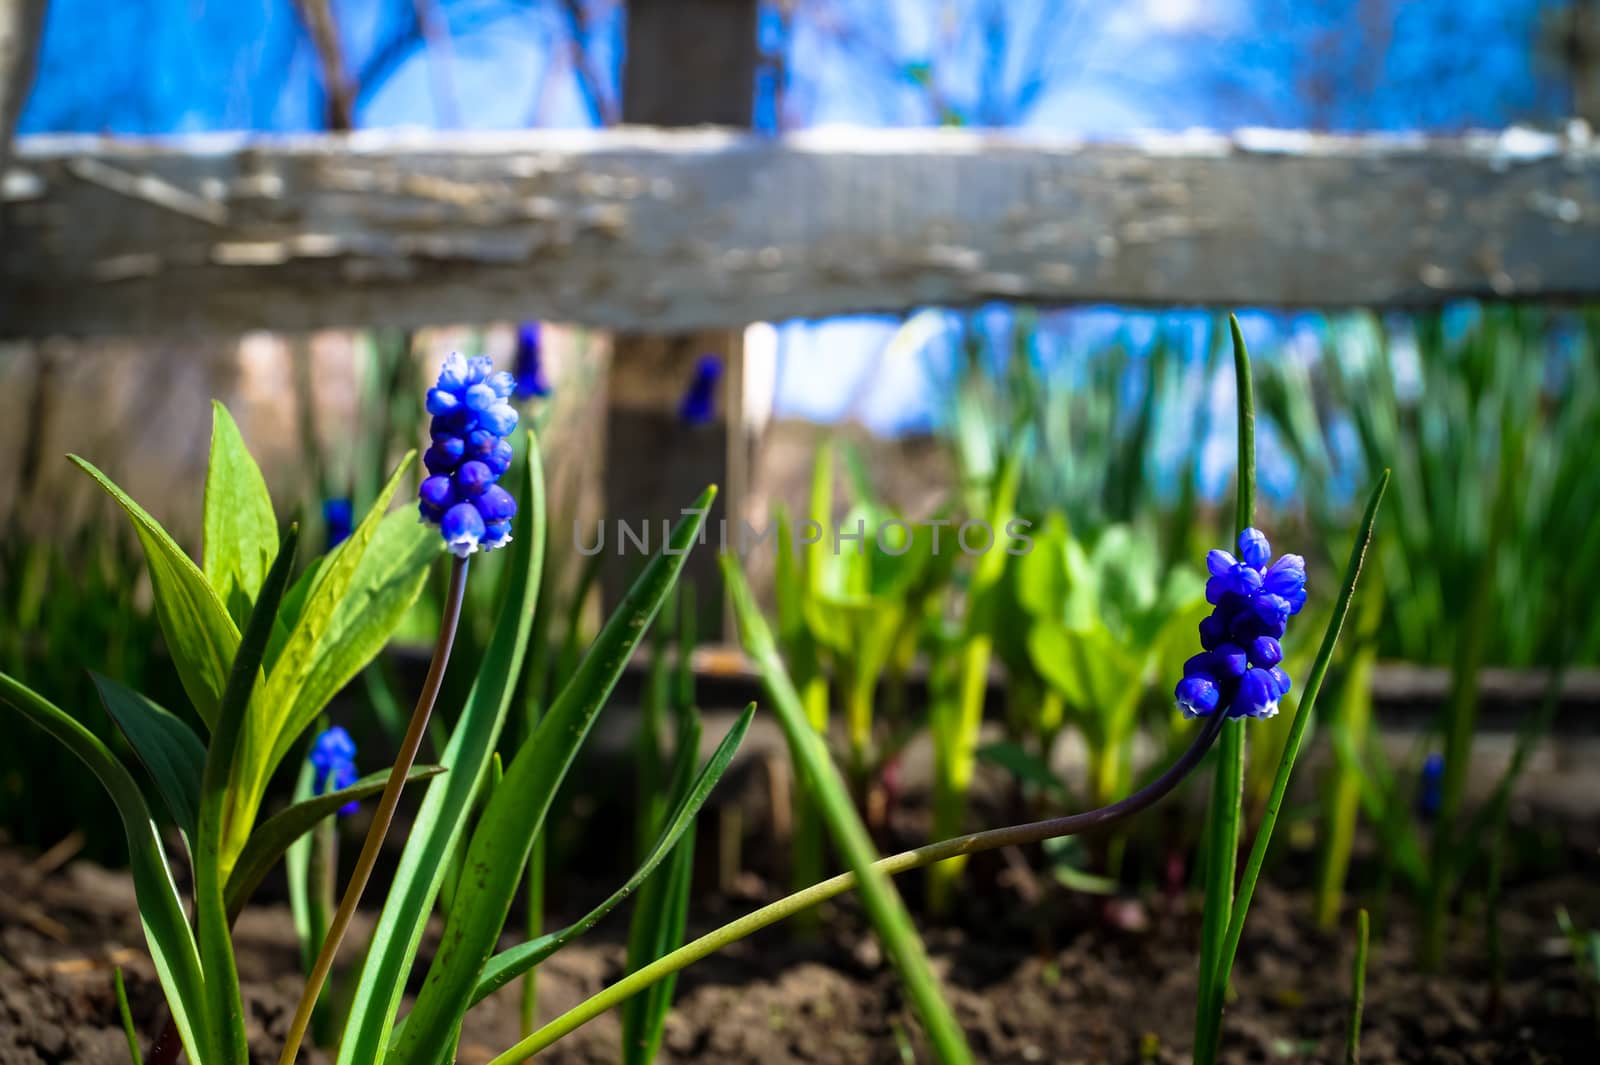 pretty little blue flowers in the garden by Oleczka11